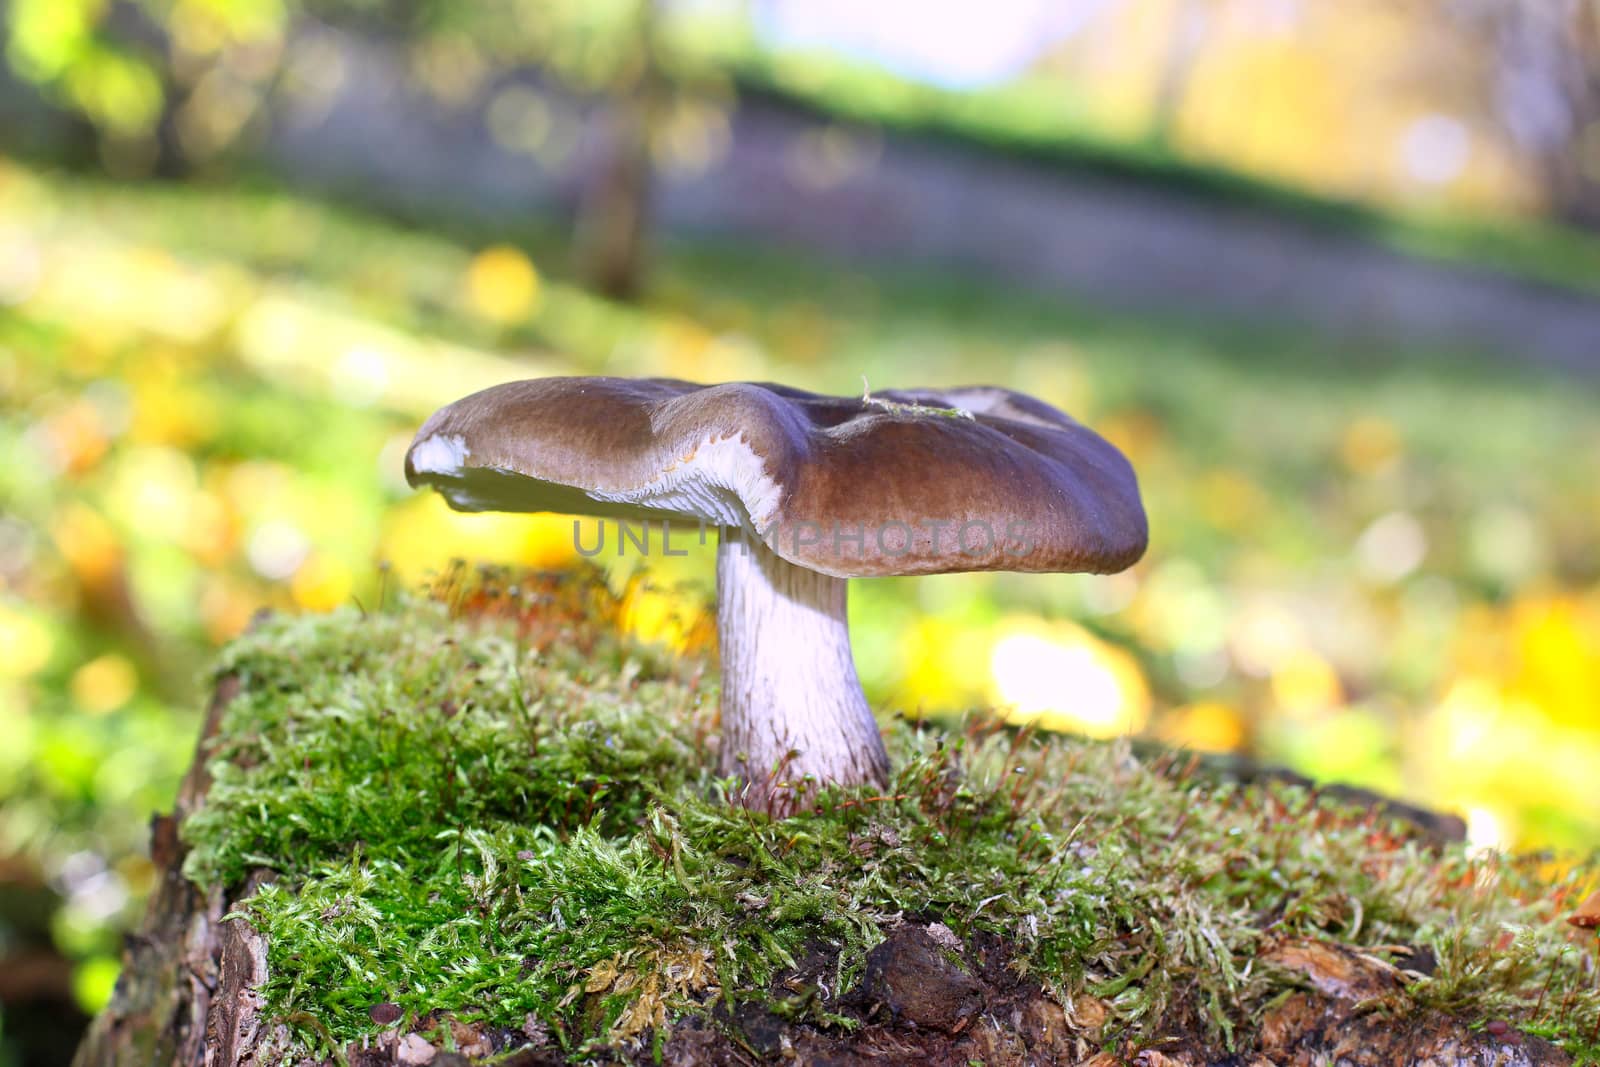 Mushroom on blurred yellowish background.